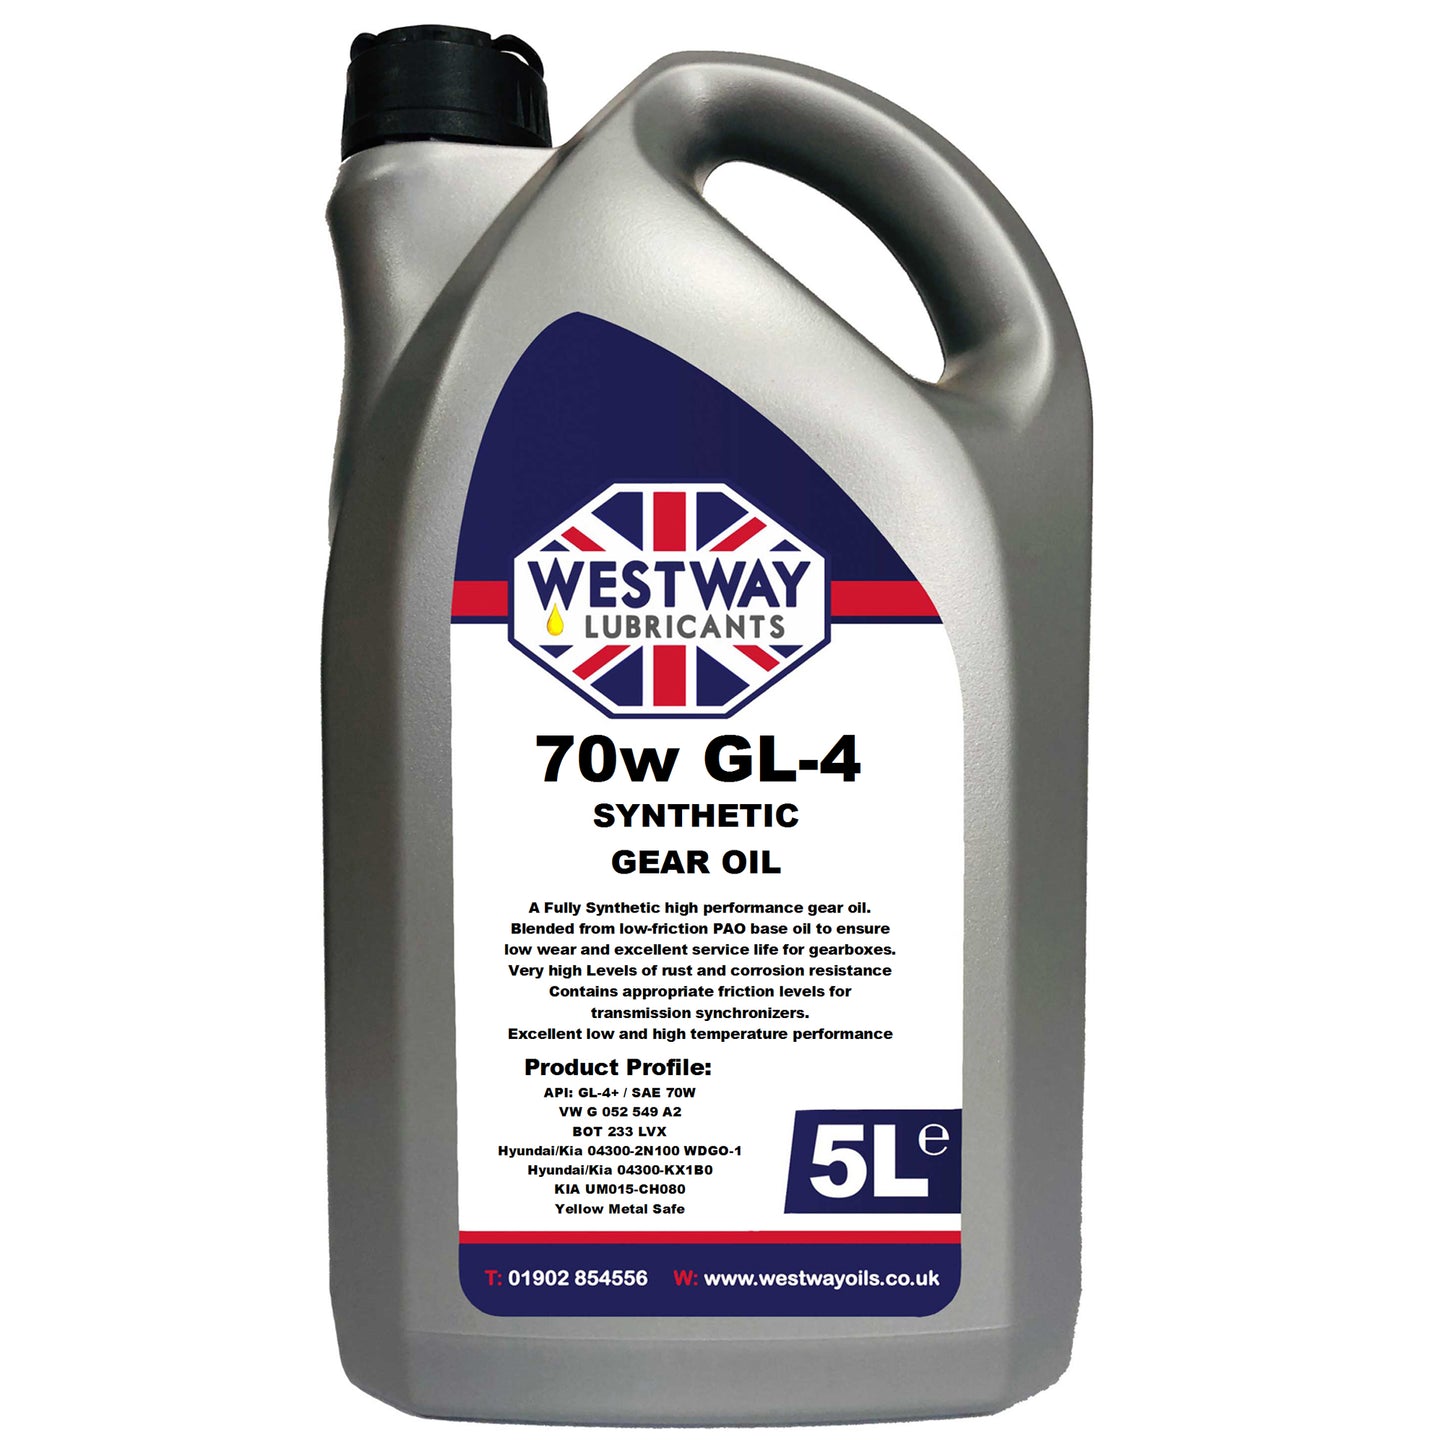 70w GL-4 Synthetic Gear Oil G 052 549 A2